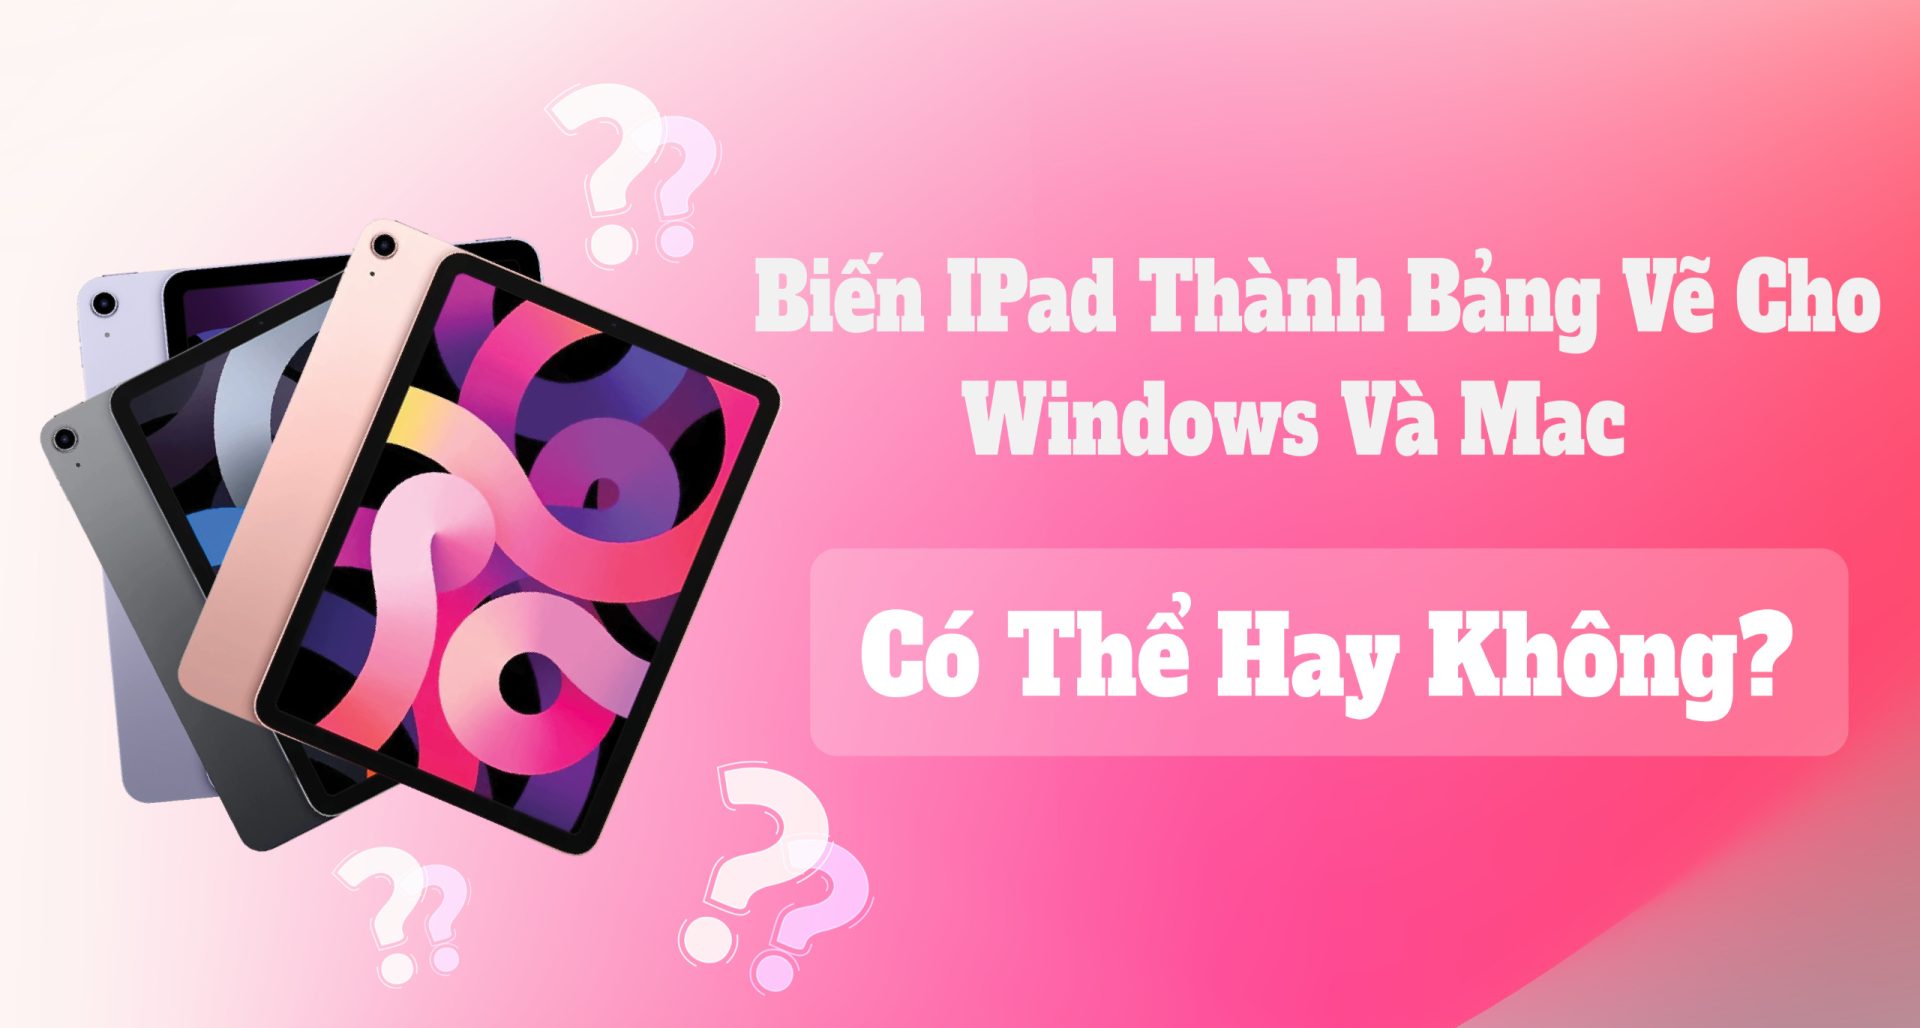 Biến iPad Thành Bảng Vẽ Cho Windows Và Mac: Có Thể Hay Không?